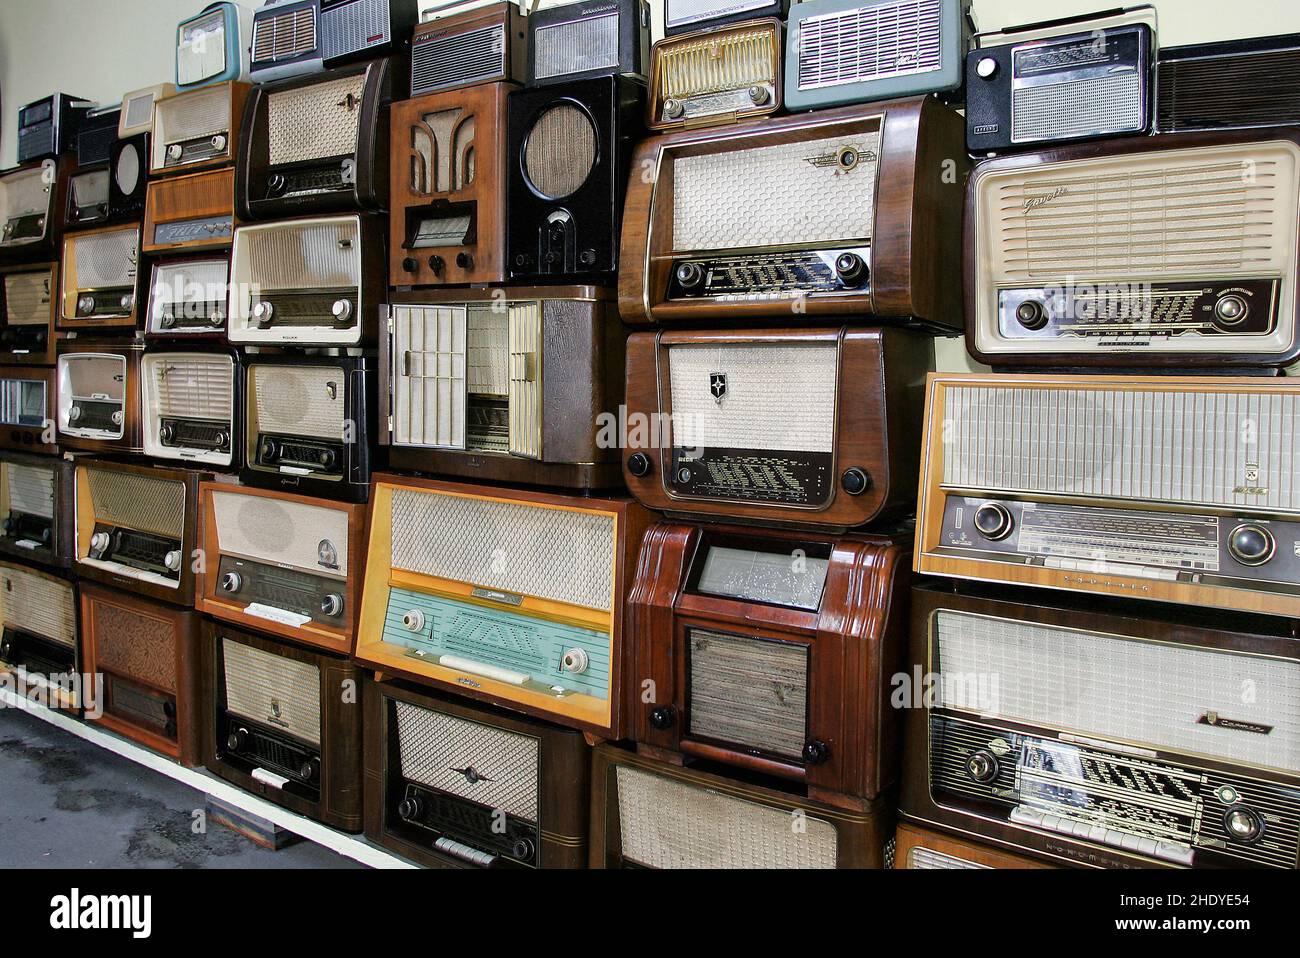 radio, radio receiver, radios, radio receivers Stock Photo